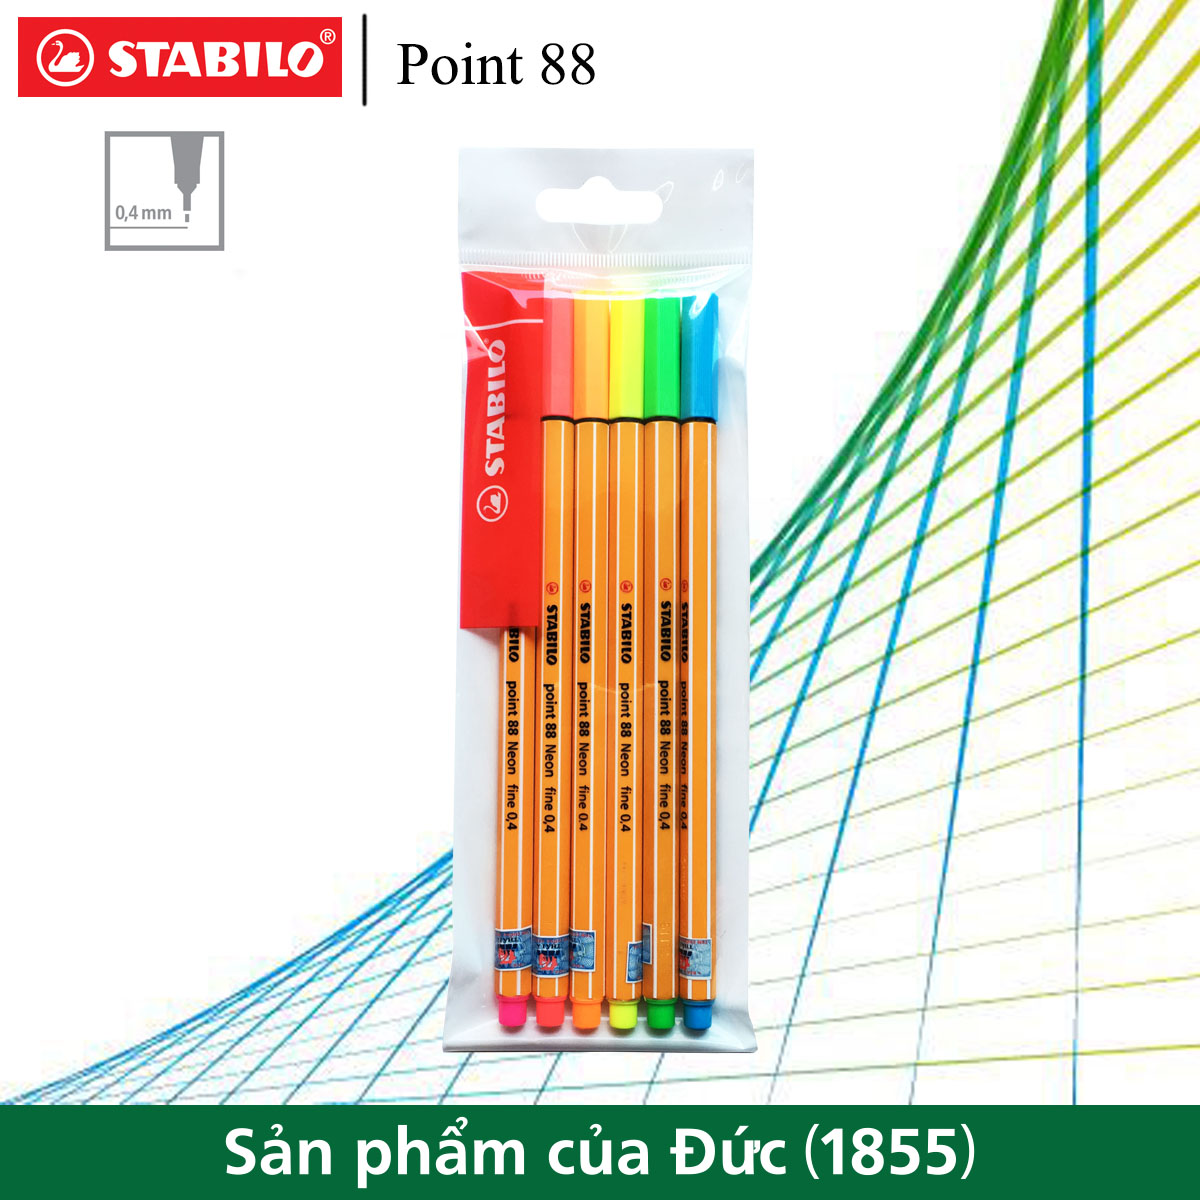 Bộ 6 bút kim STABILO Point 88 0.4mm